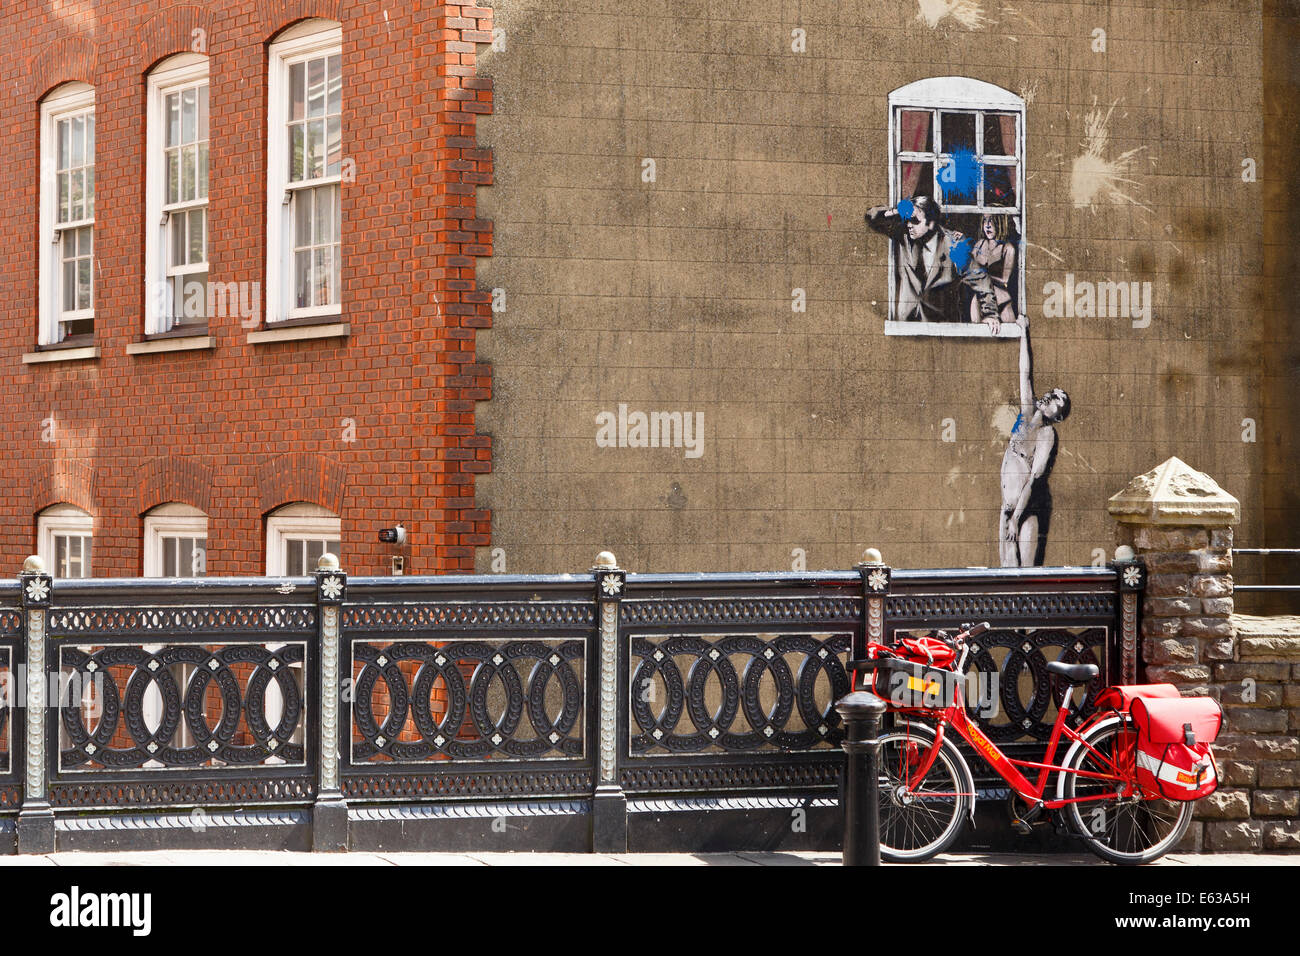 Fenêtre de banksy Banque de photographies et d'images à haute résolution -  Alamy